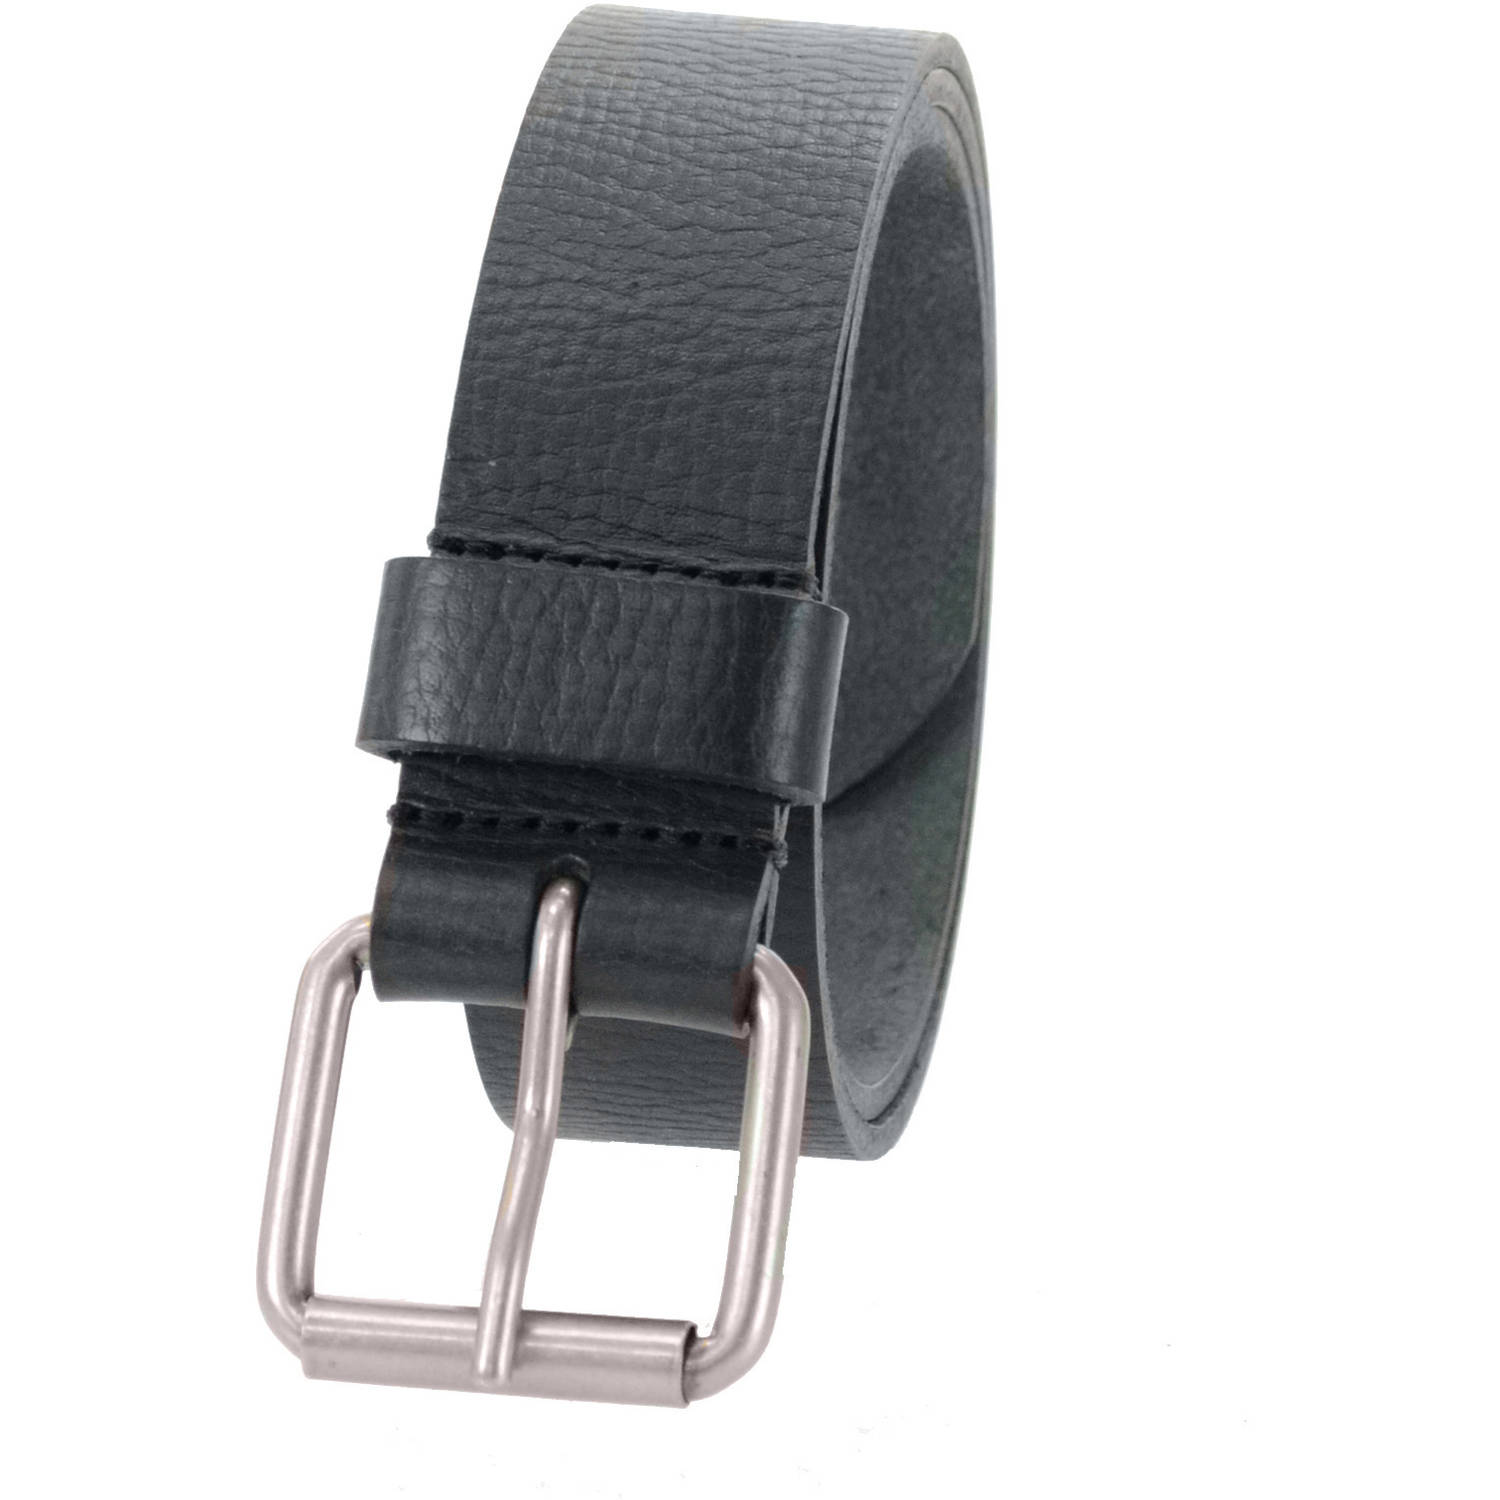 1-1/2 in. US Steer Hide Leather Pebble Grain Men's Belt w/ Antq. Nickel Roller Buckle- Black - image 2 of 2